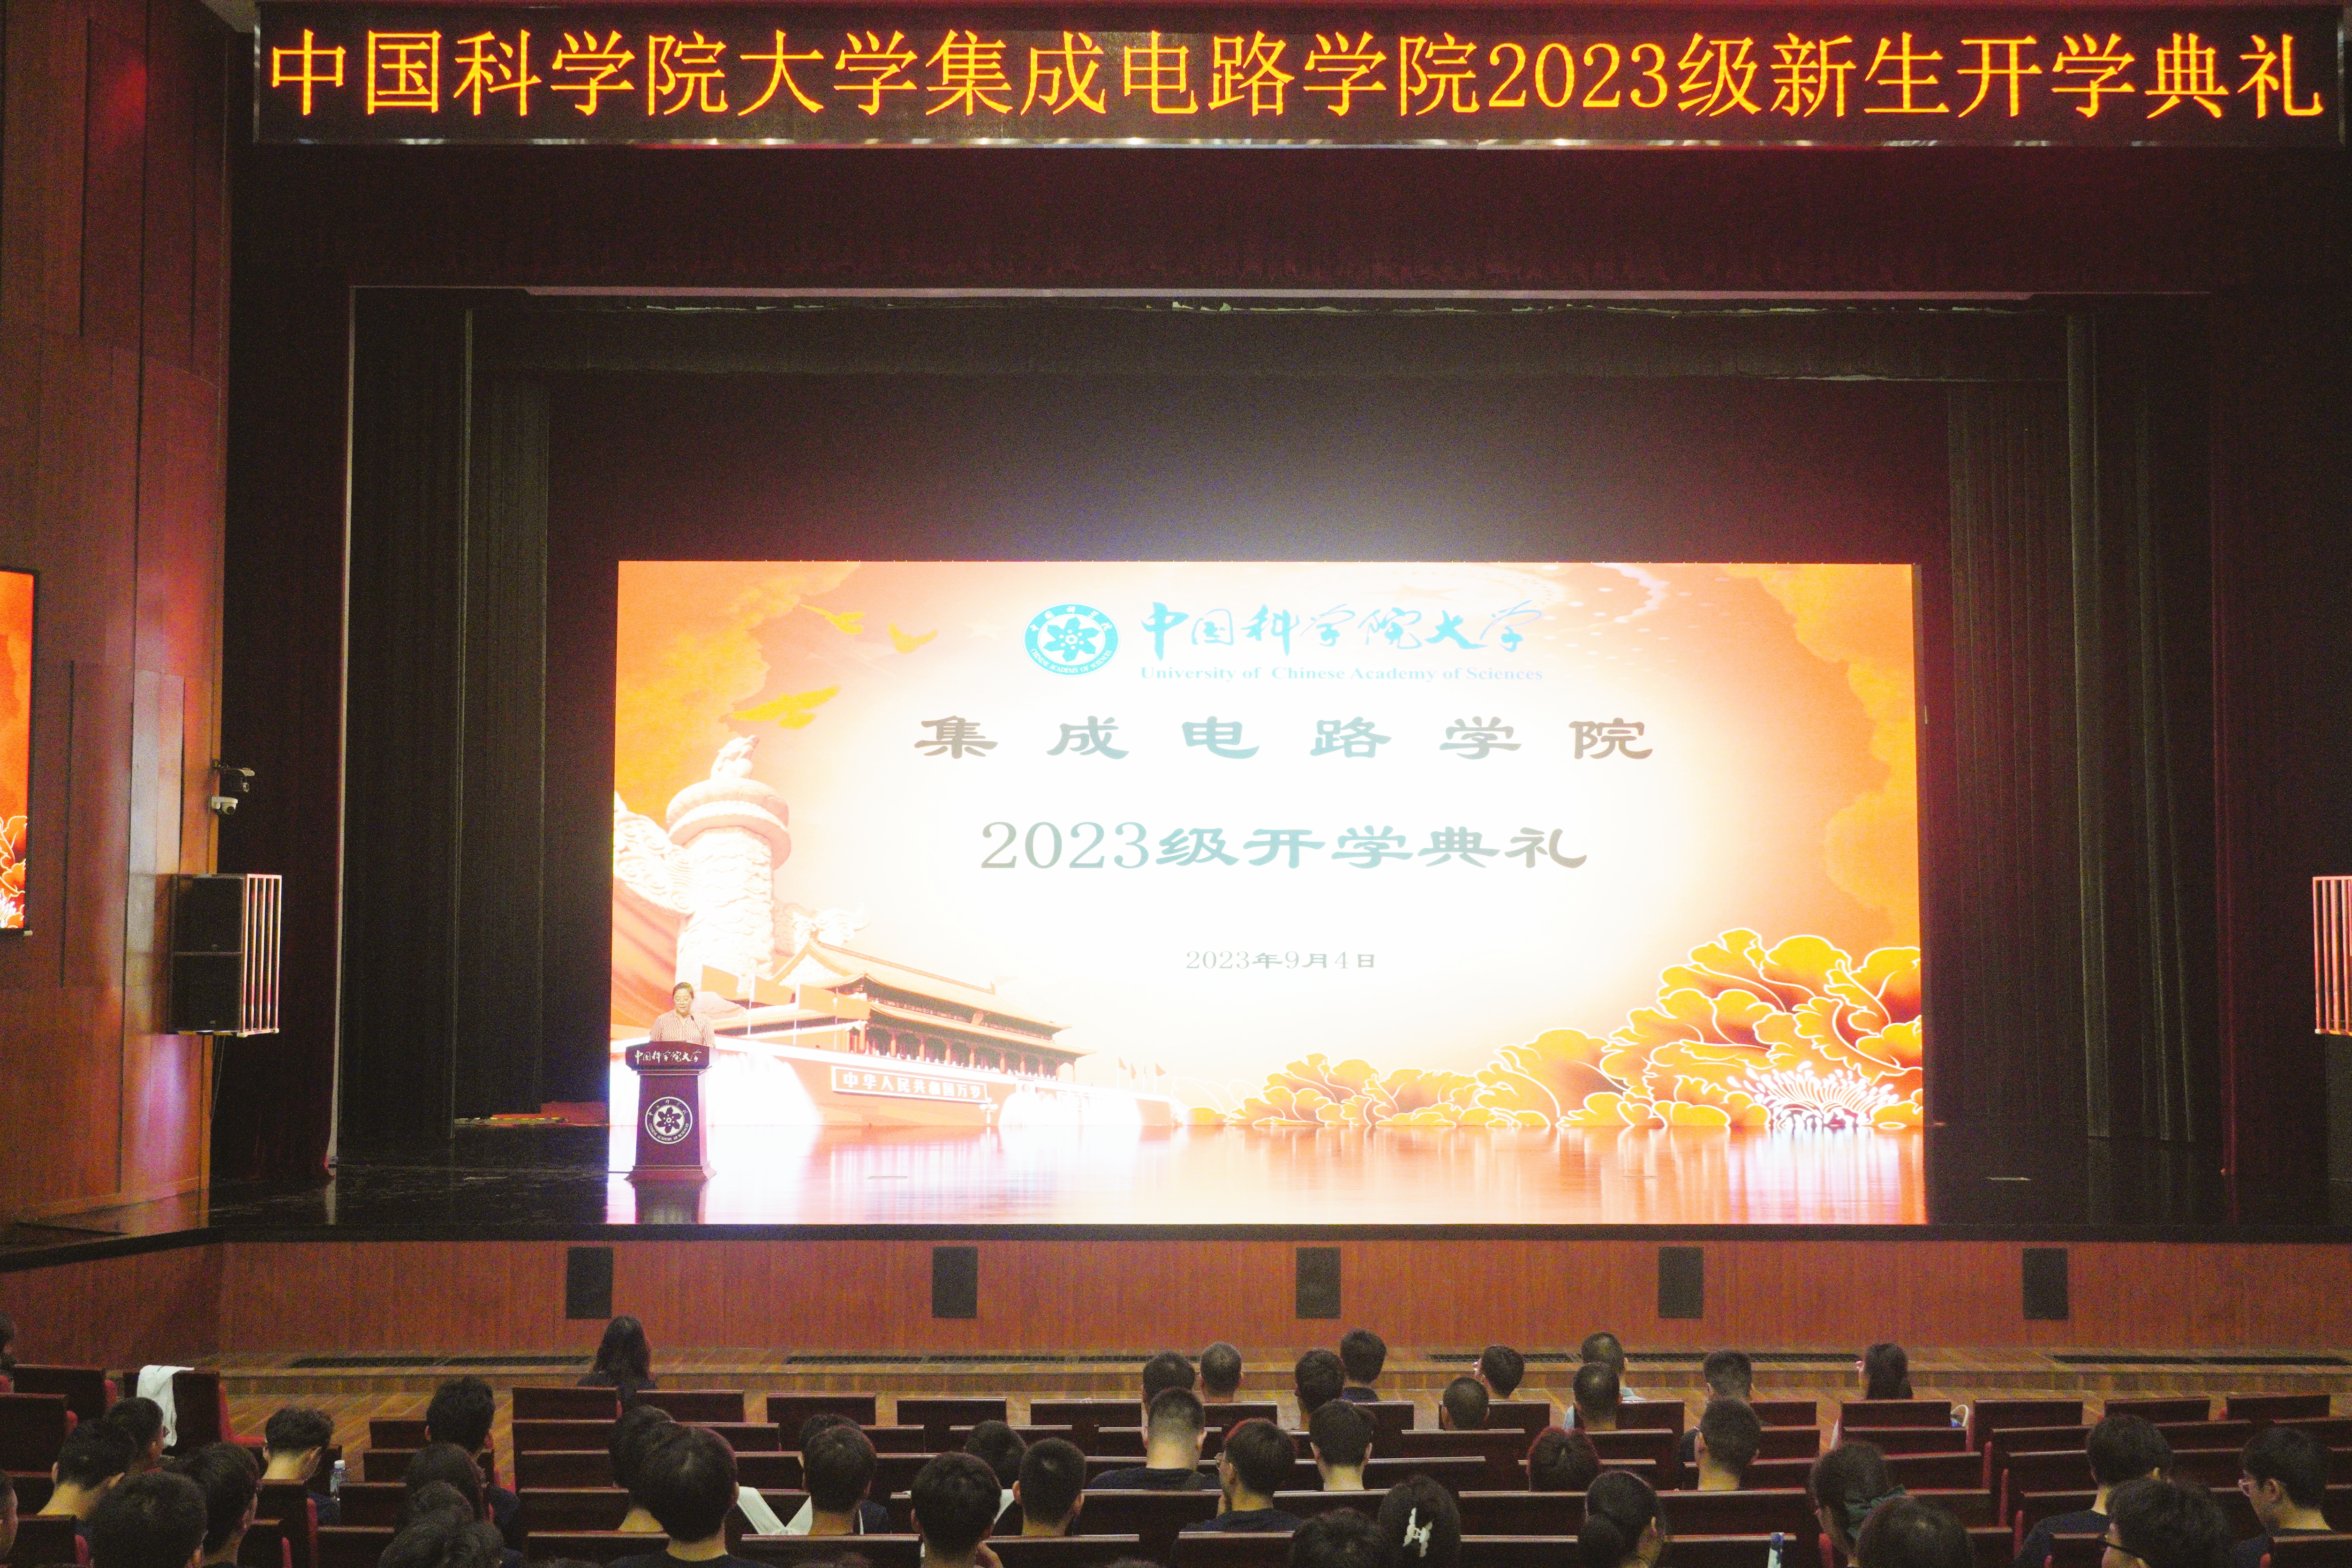 中国科学院大学集成电路学院2023级开学典礼隆重举行